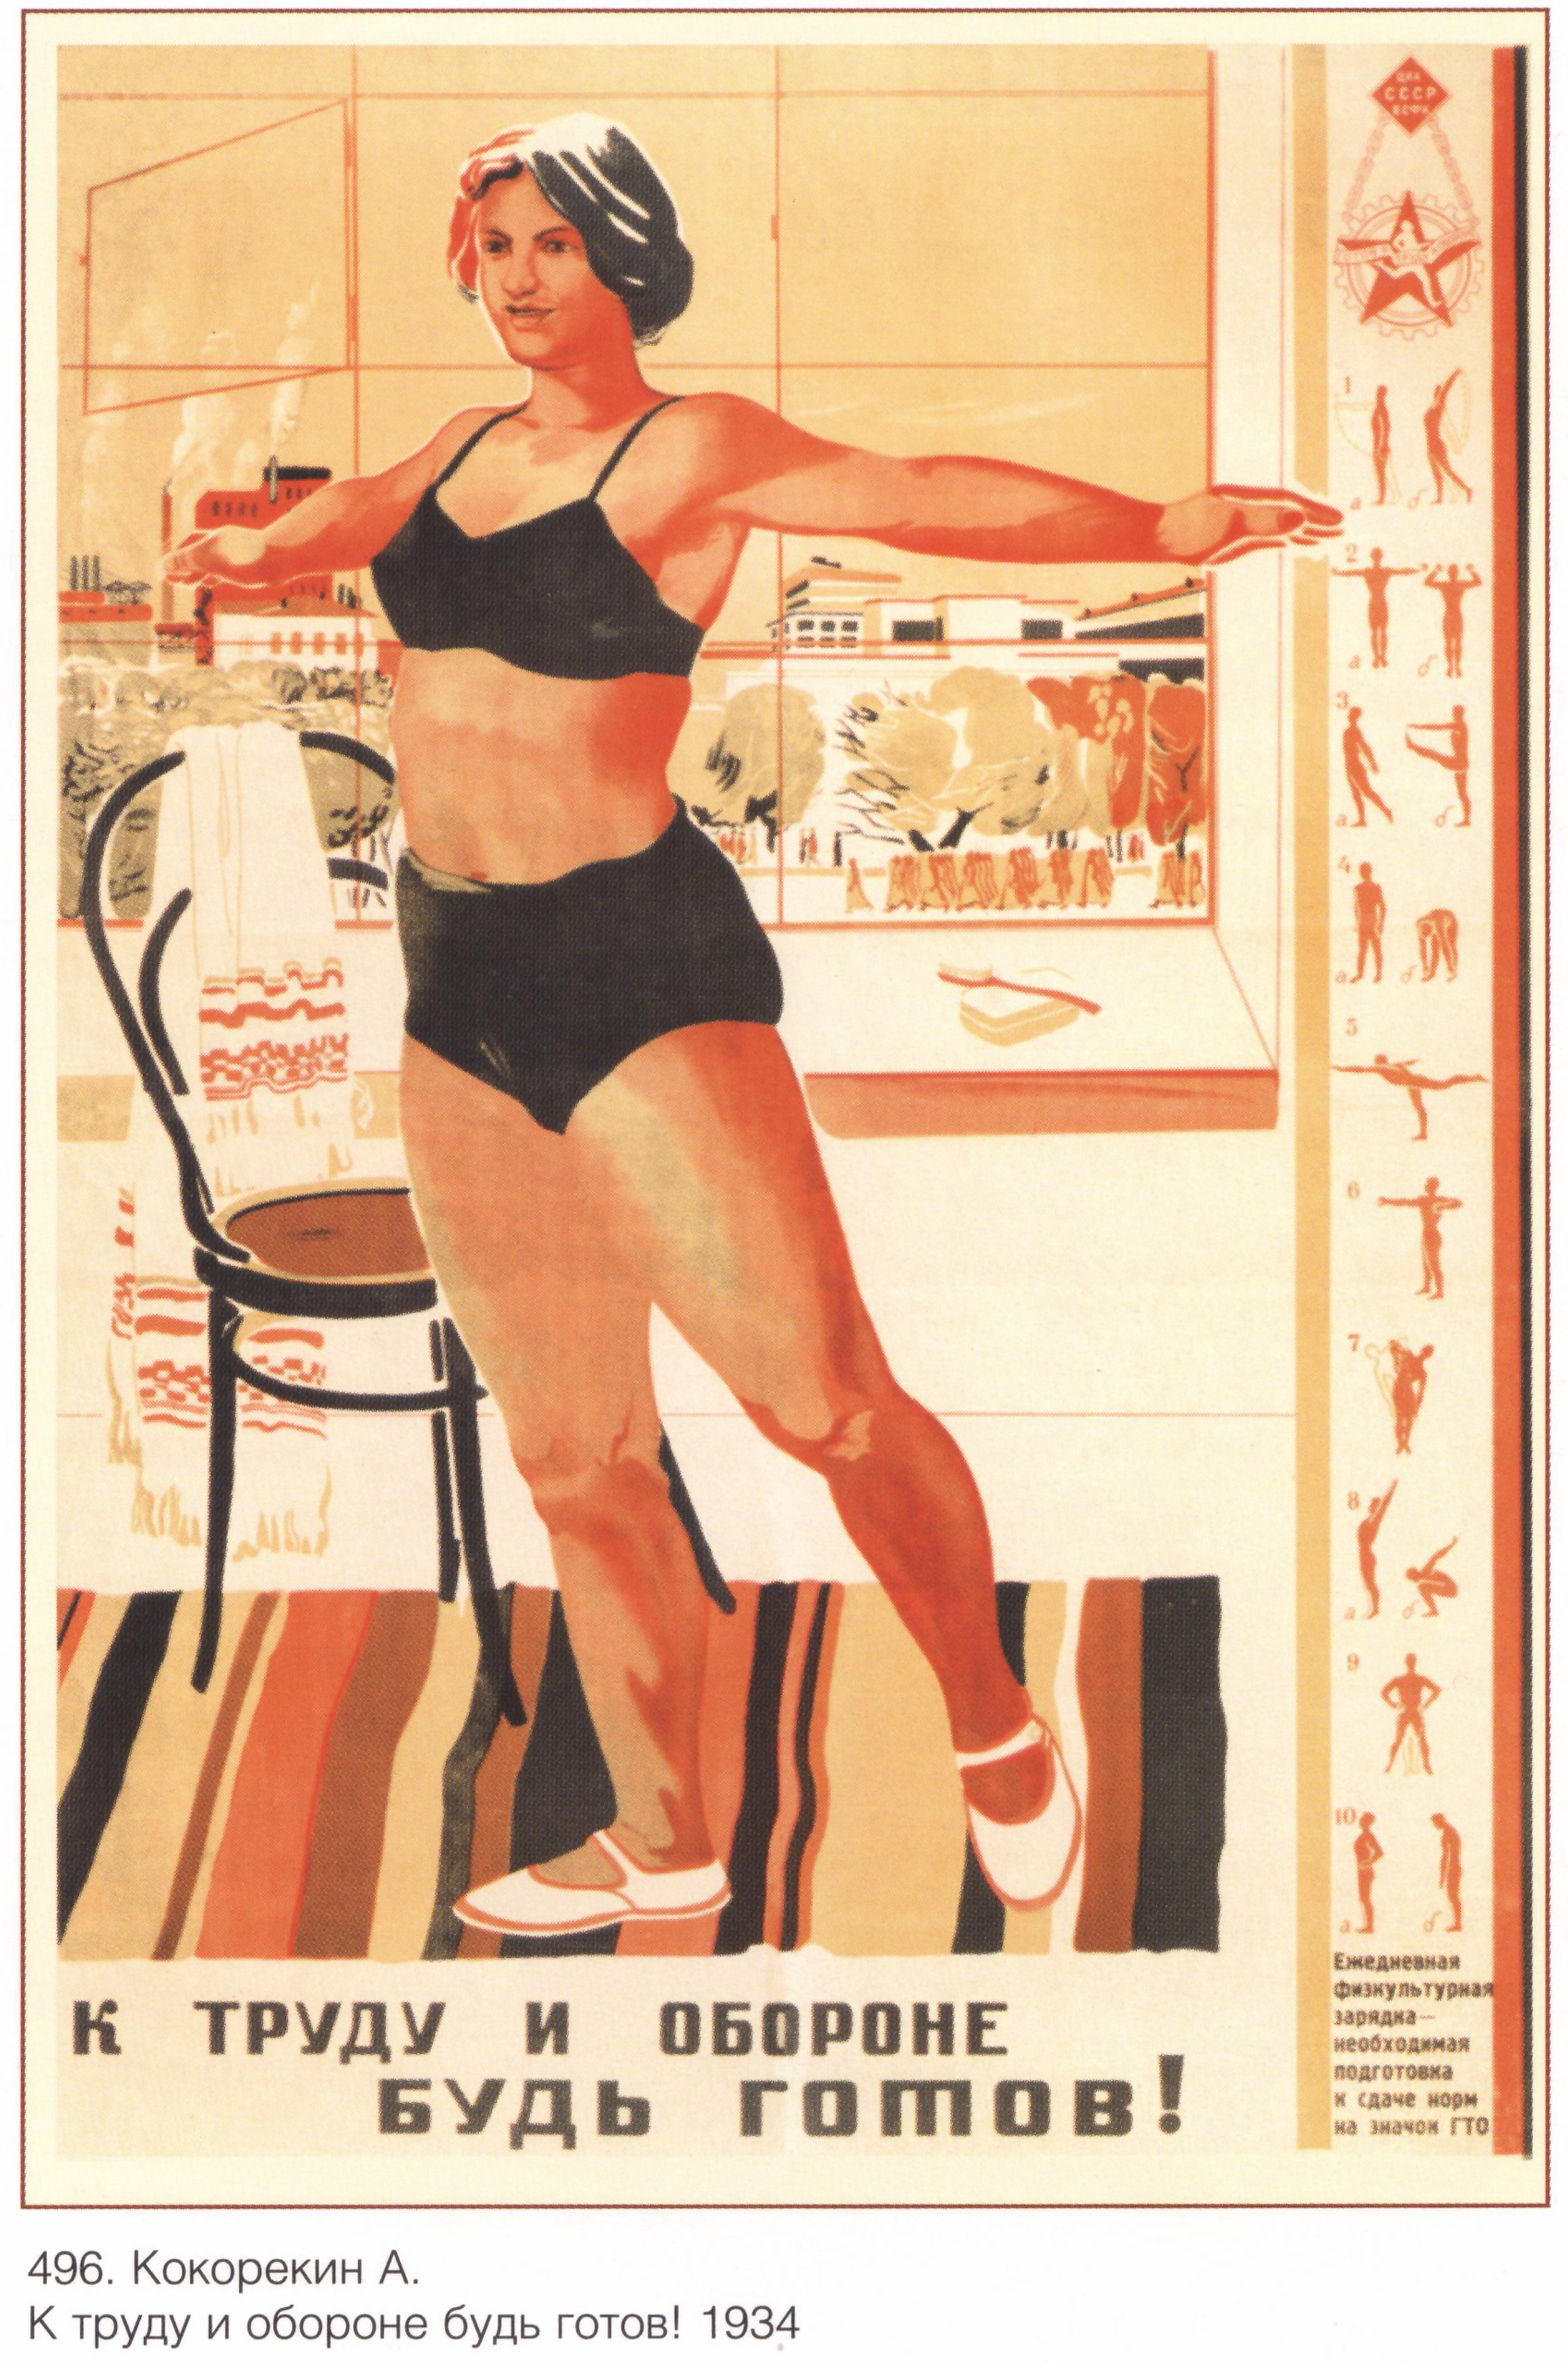 Плакат прошлых лет. Советские плакаты. Советские агитационные плакаты. Советские cgjhnbdystплакаты.